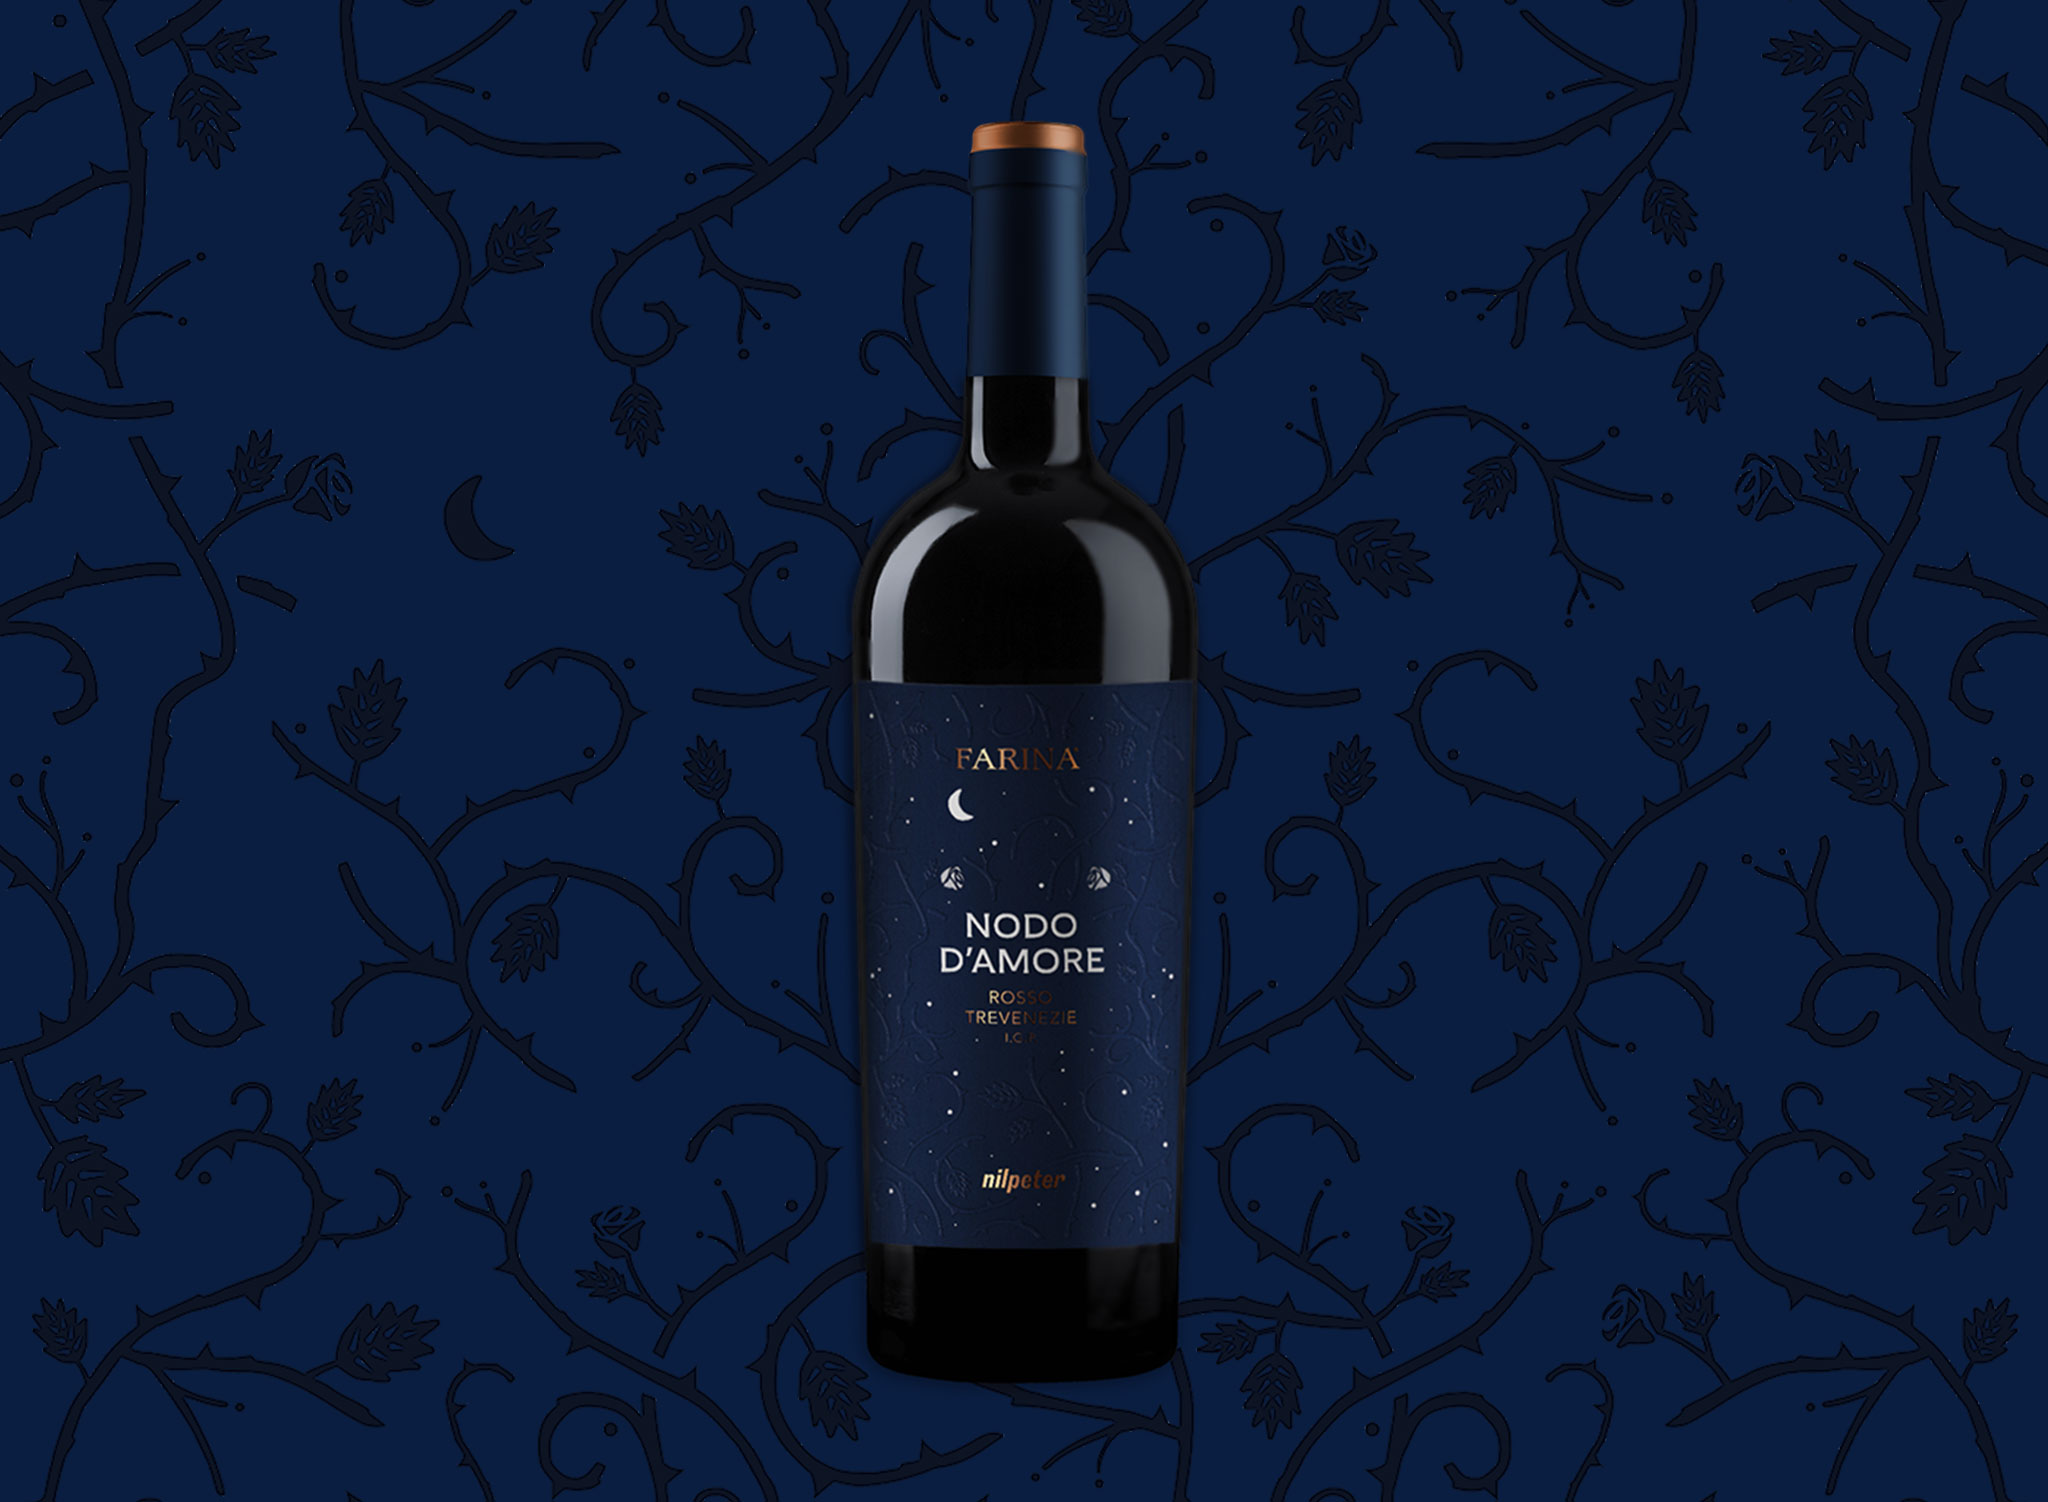 Bottiglia con etichetta blu su sfondo scuro ispirata a Romeo e Giulietta